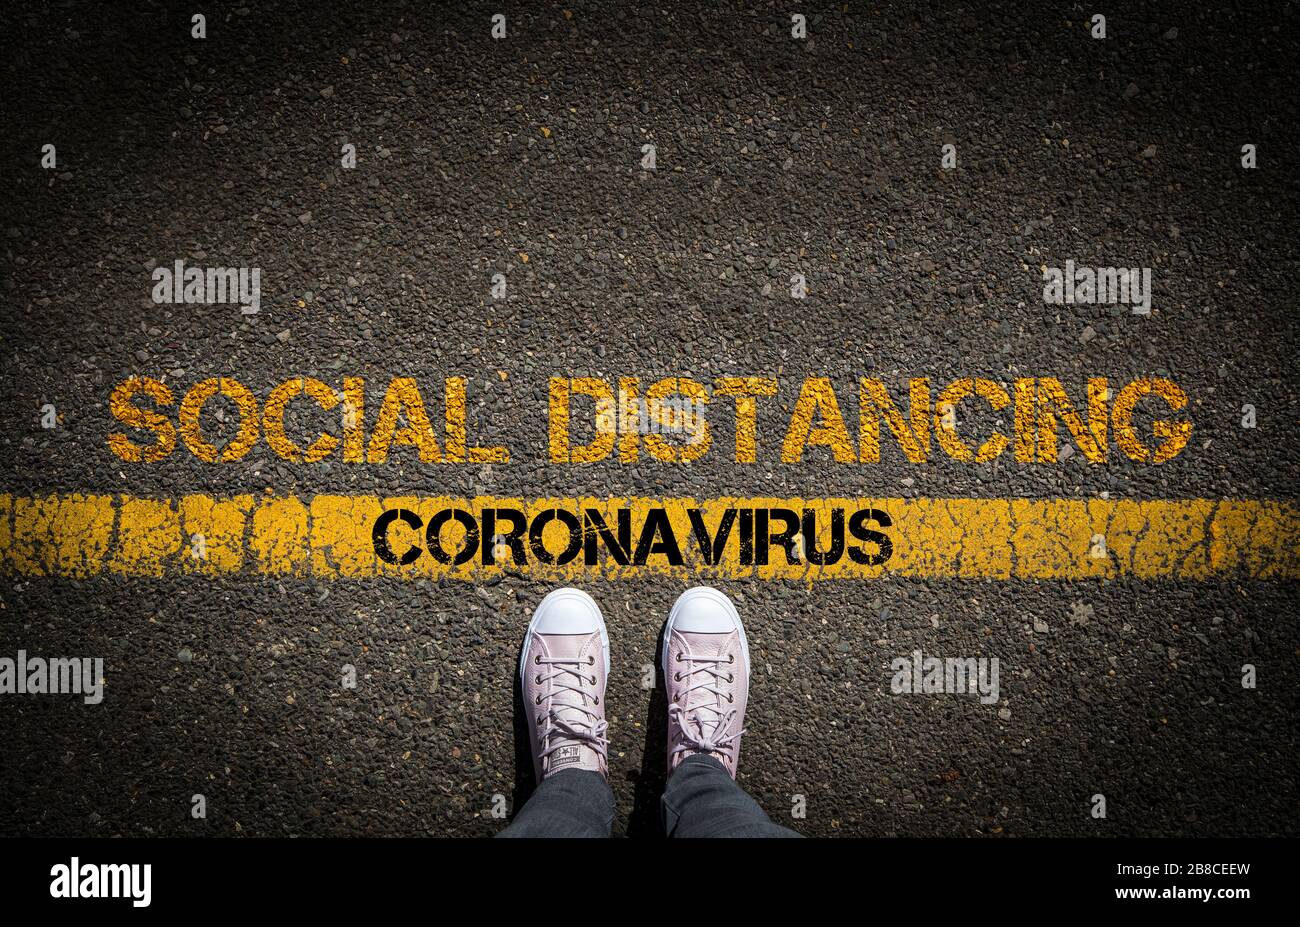 Soziale Distanzierung, um die Verbreitung von Coronavirus zu verringern, Konzeptbild. Stockfoto